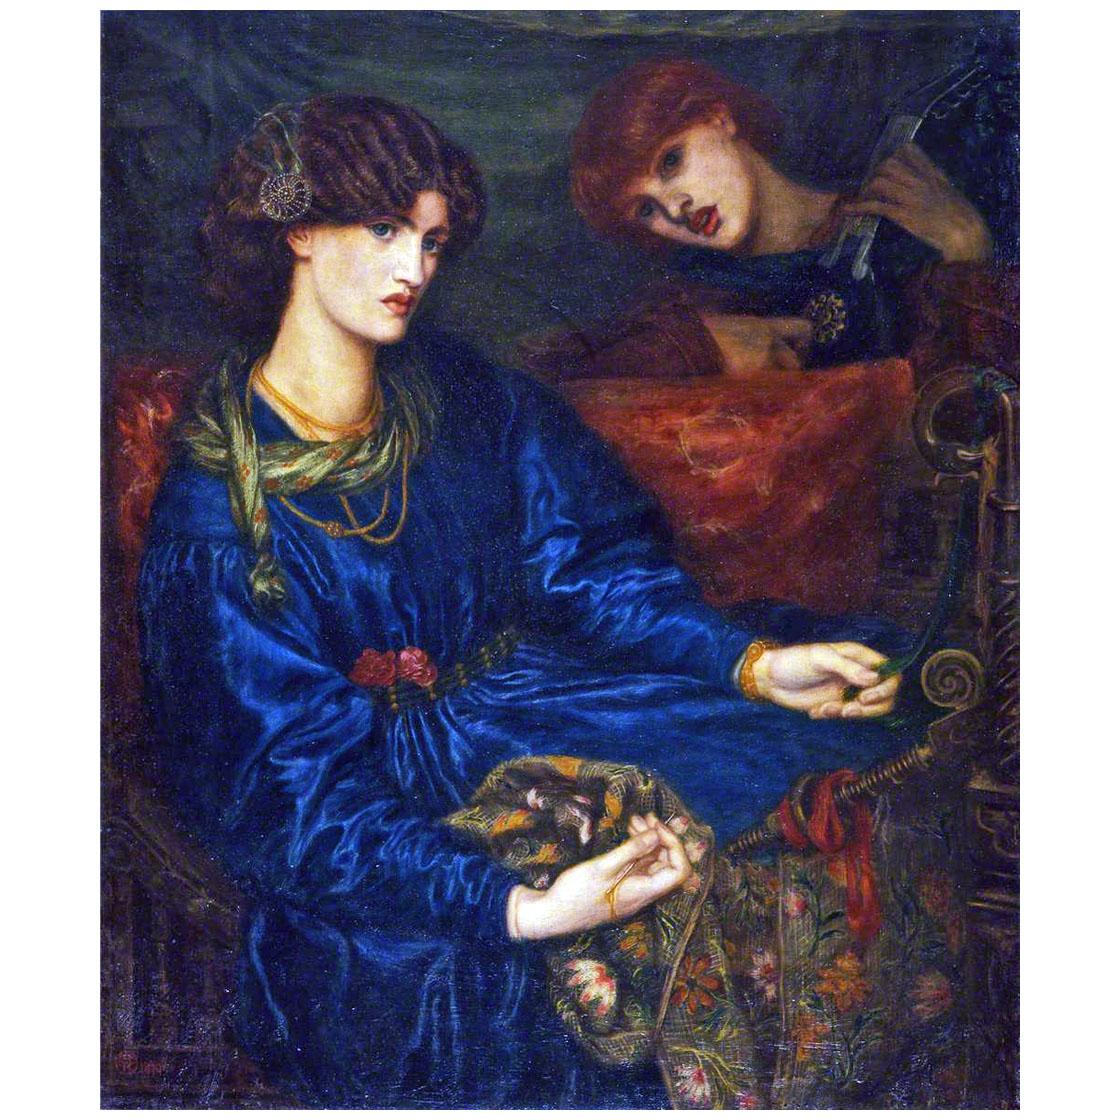 Dante Gabriel Rossetti. Marianna. 1870. Aberdeen Art Gallery